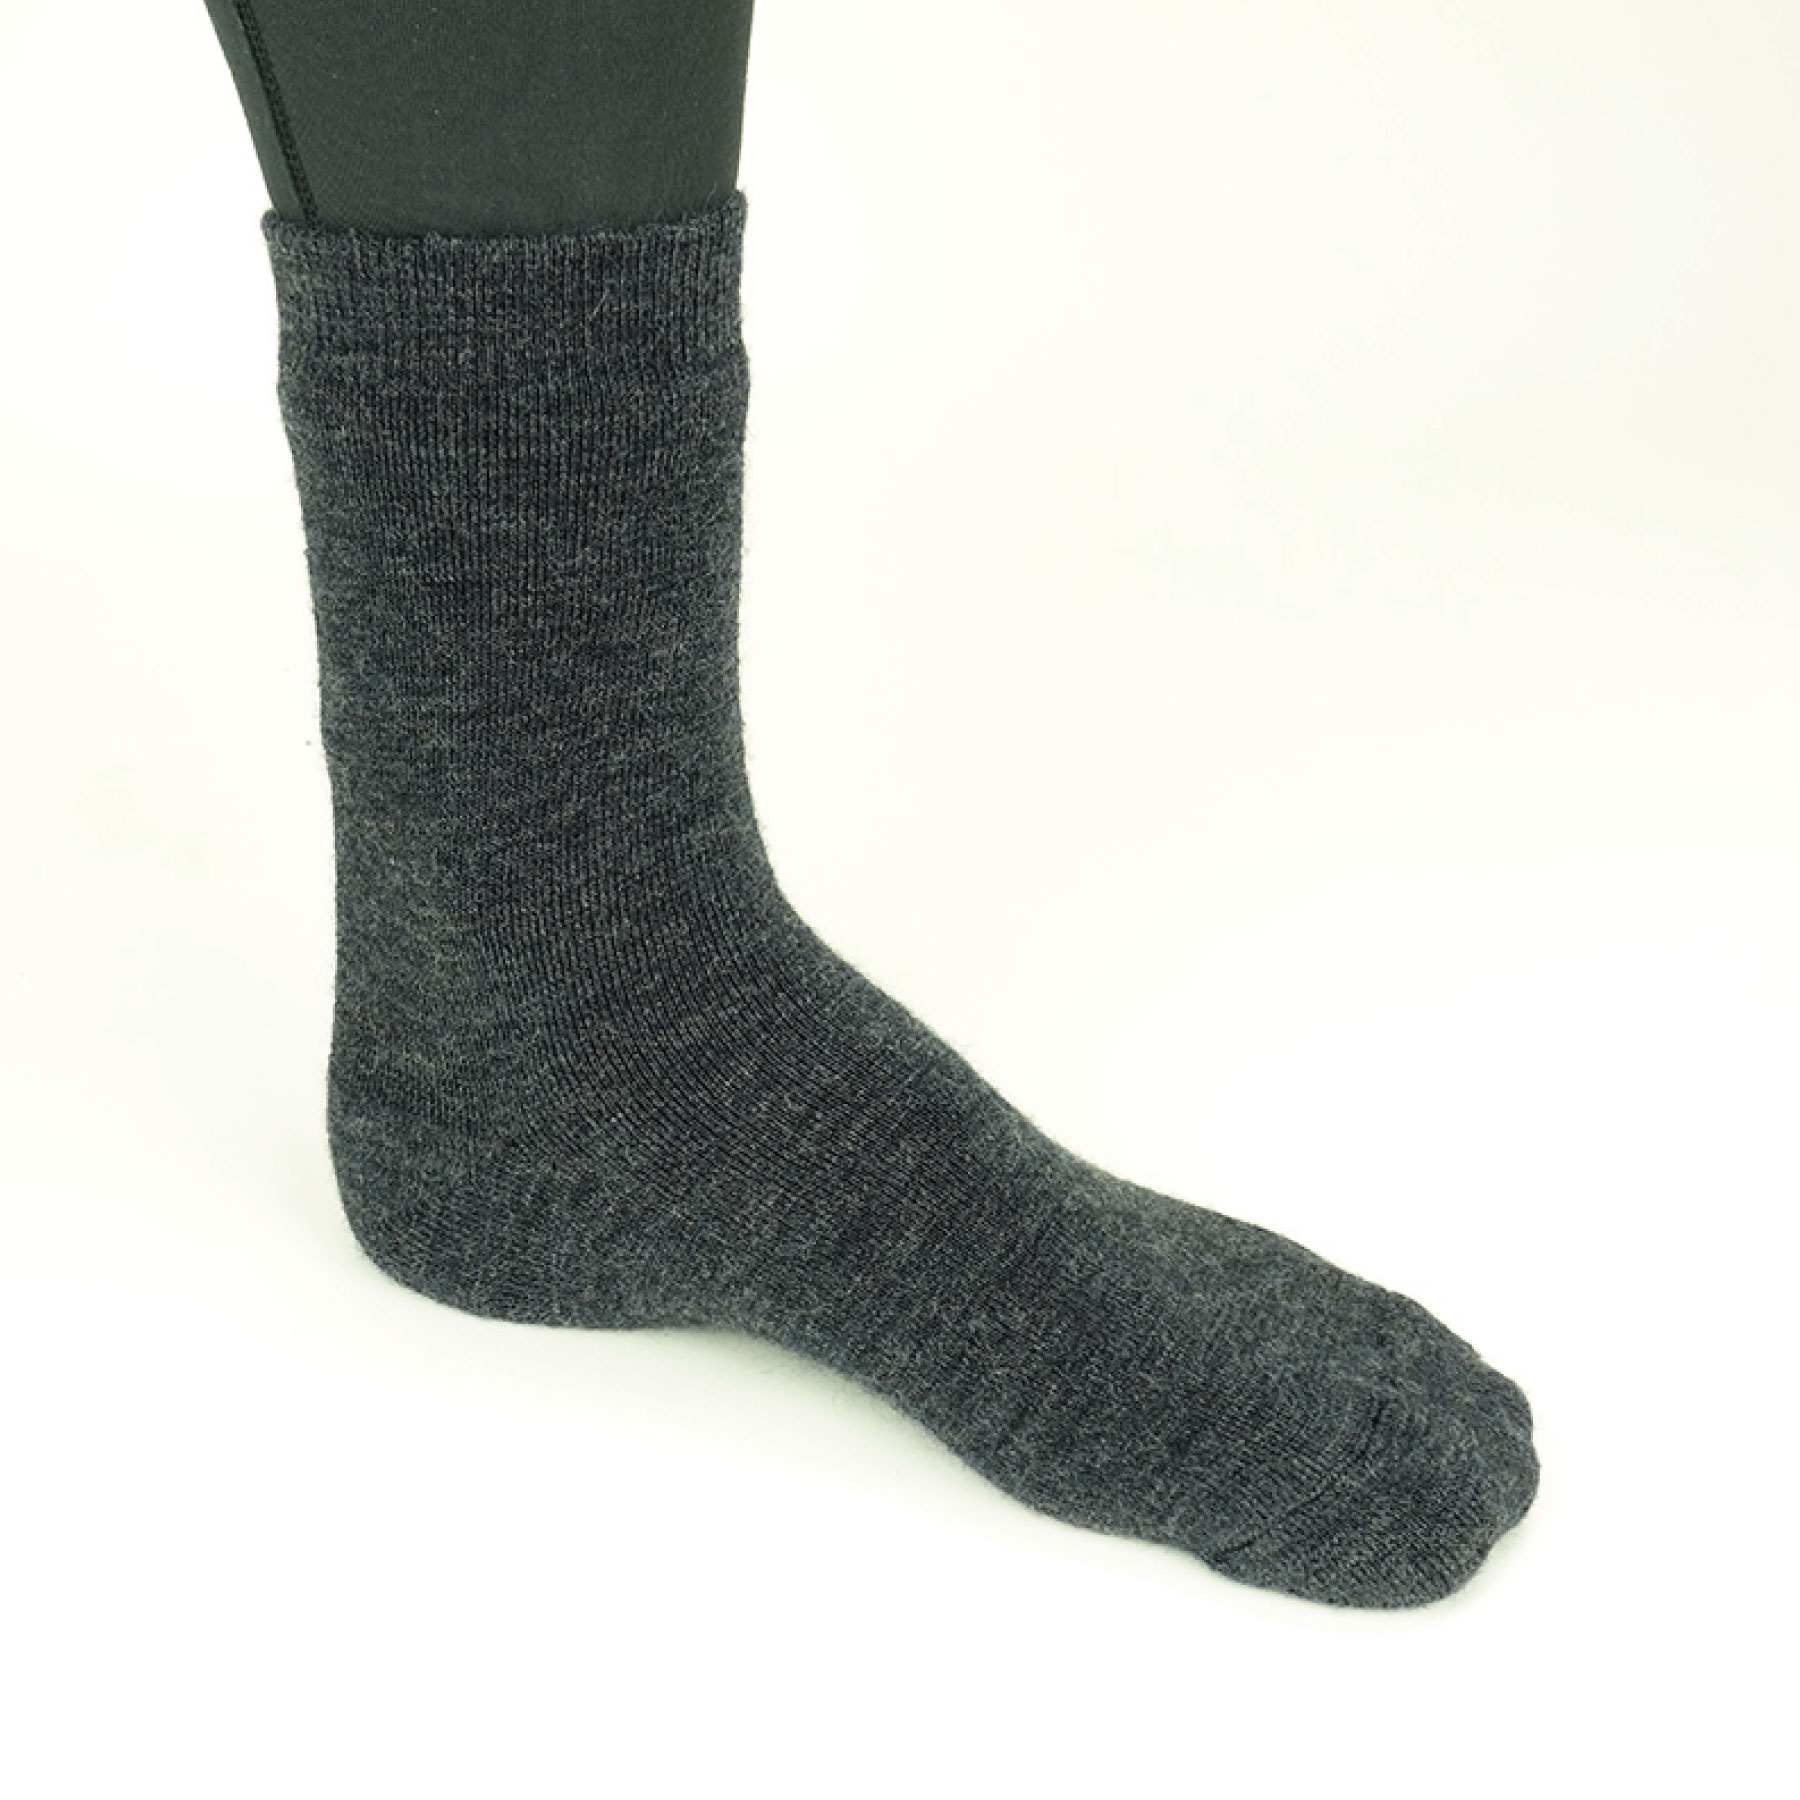 Enluva Wool Drysuit Socks - The Honest Diver